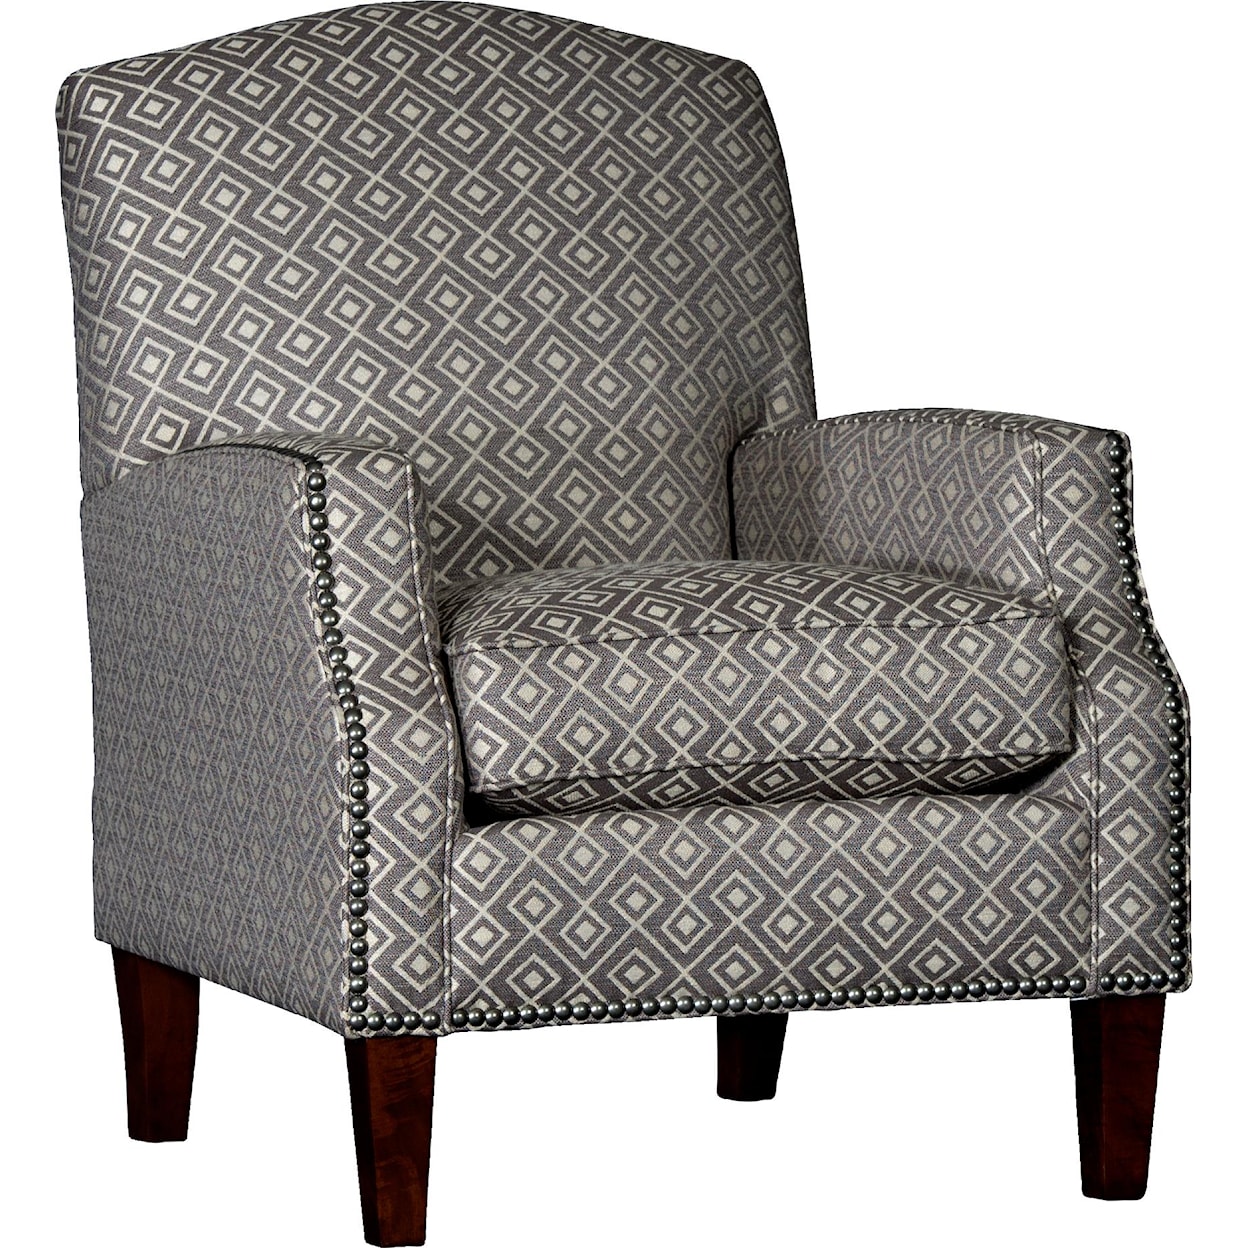 Mayo 3725 Chair